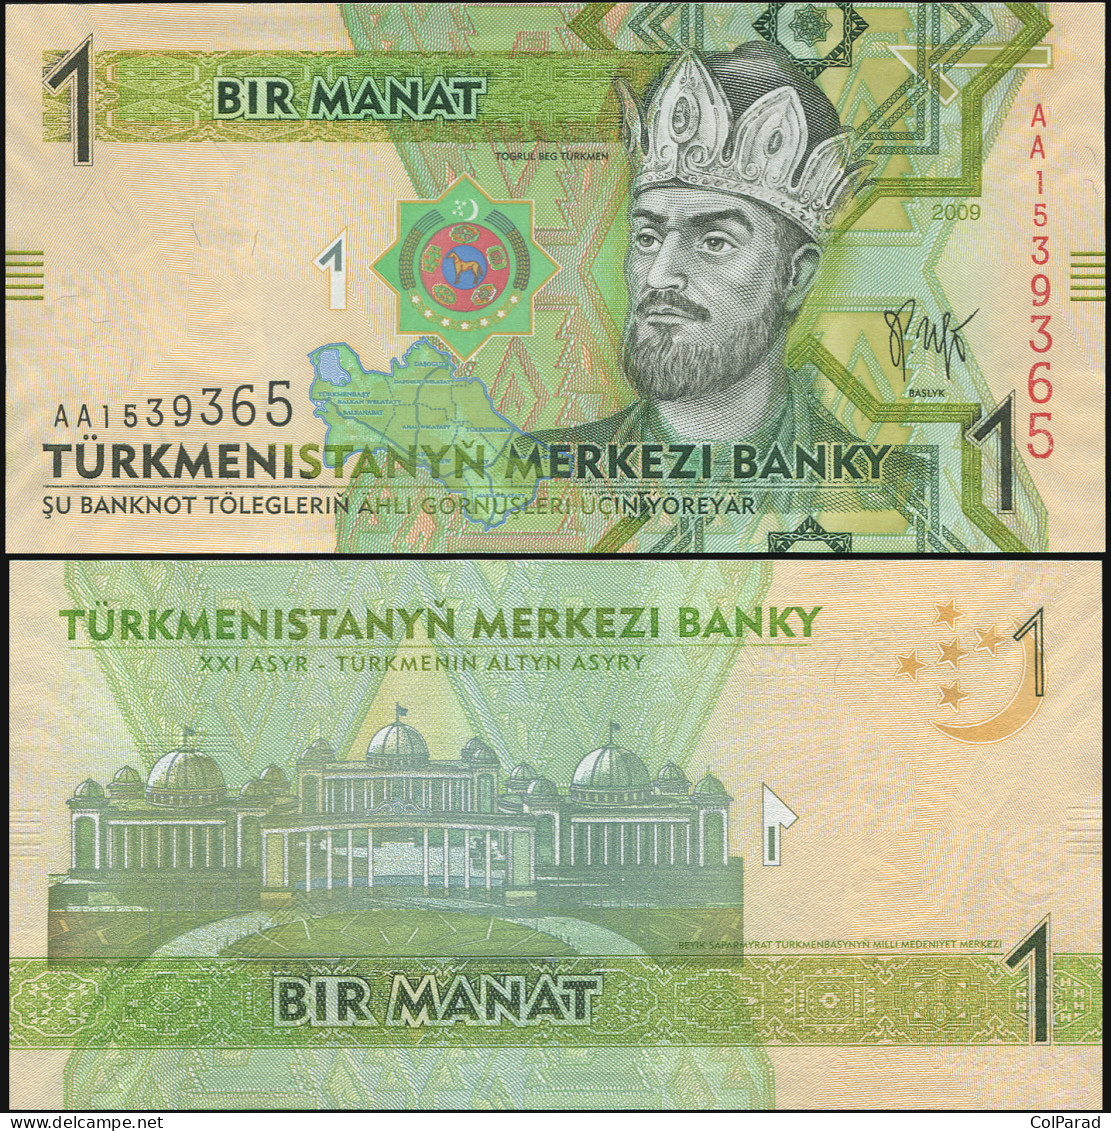 TURKMENISTAN 1 MANAT - 2009 - Unc - P.22a Paper Banknote - Turkmenistán